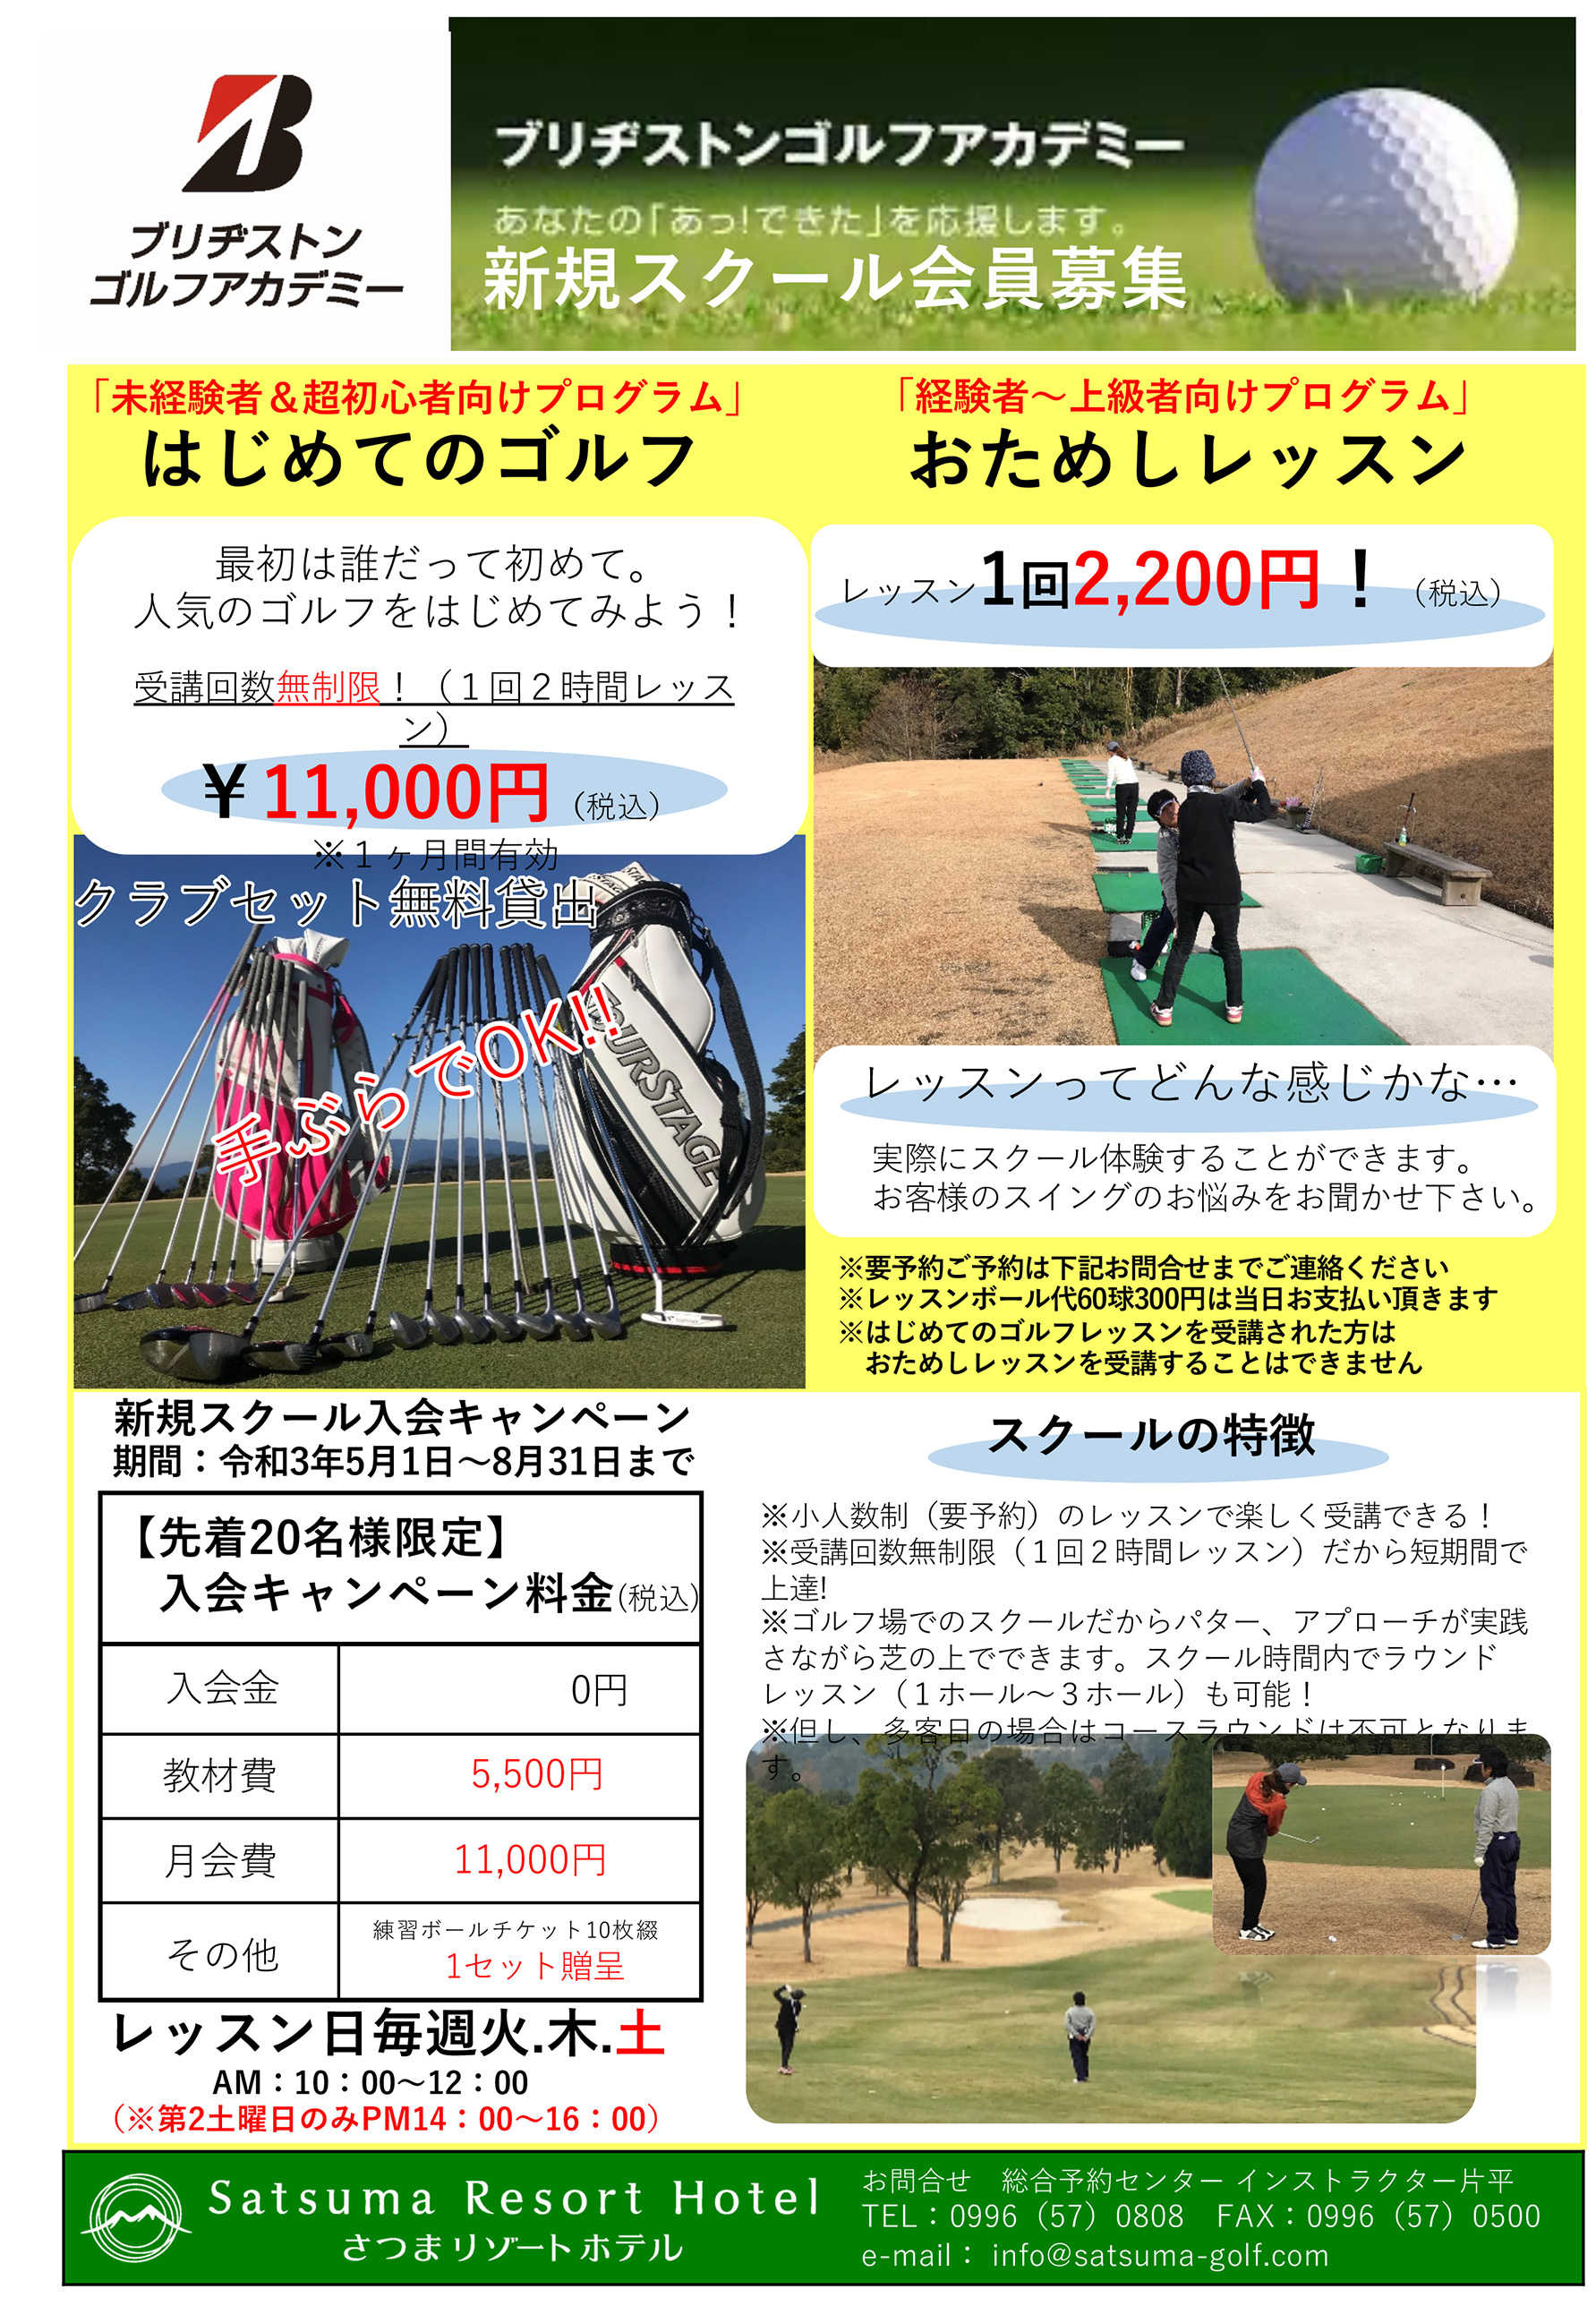 ブリヂストンゴルフアカデミー 公式 さつまゴルフリゾート Satsuma Golf Resort